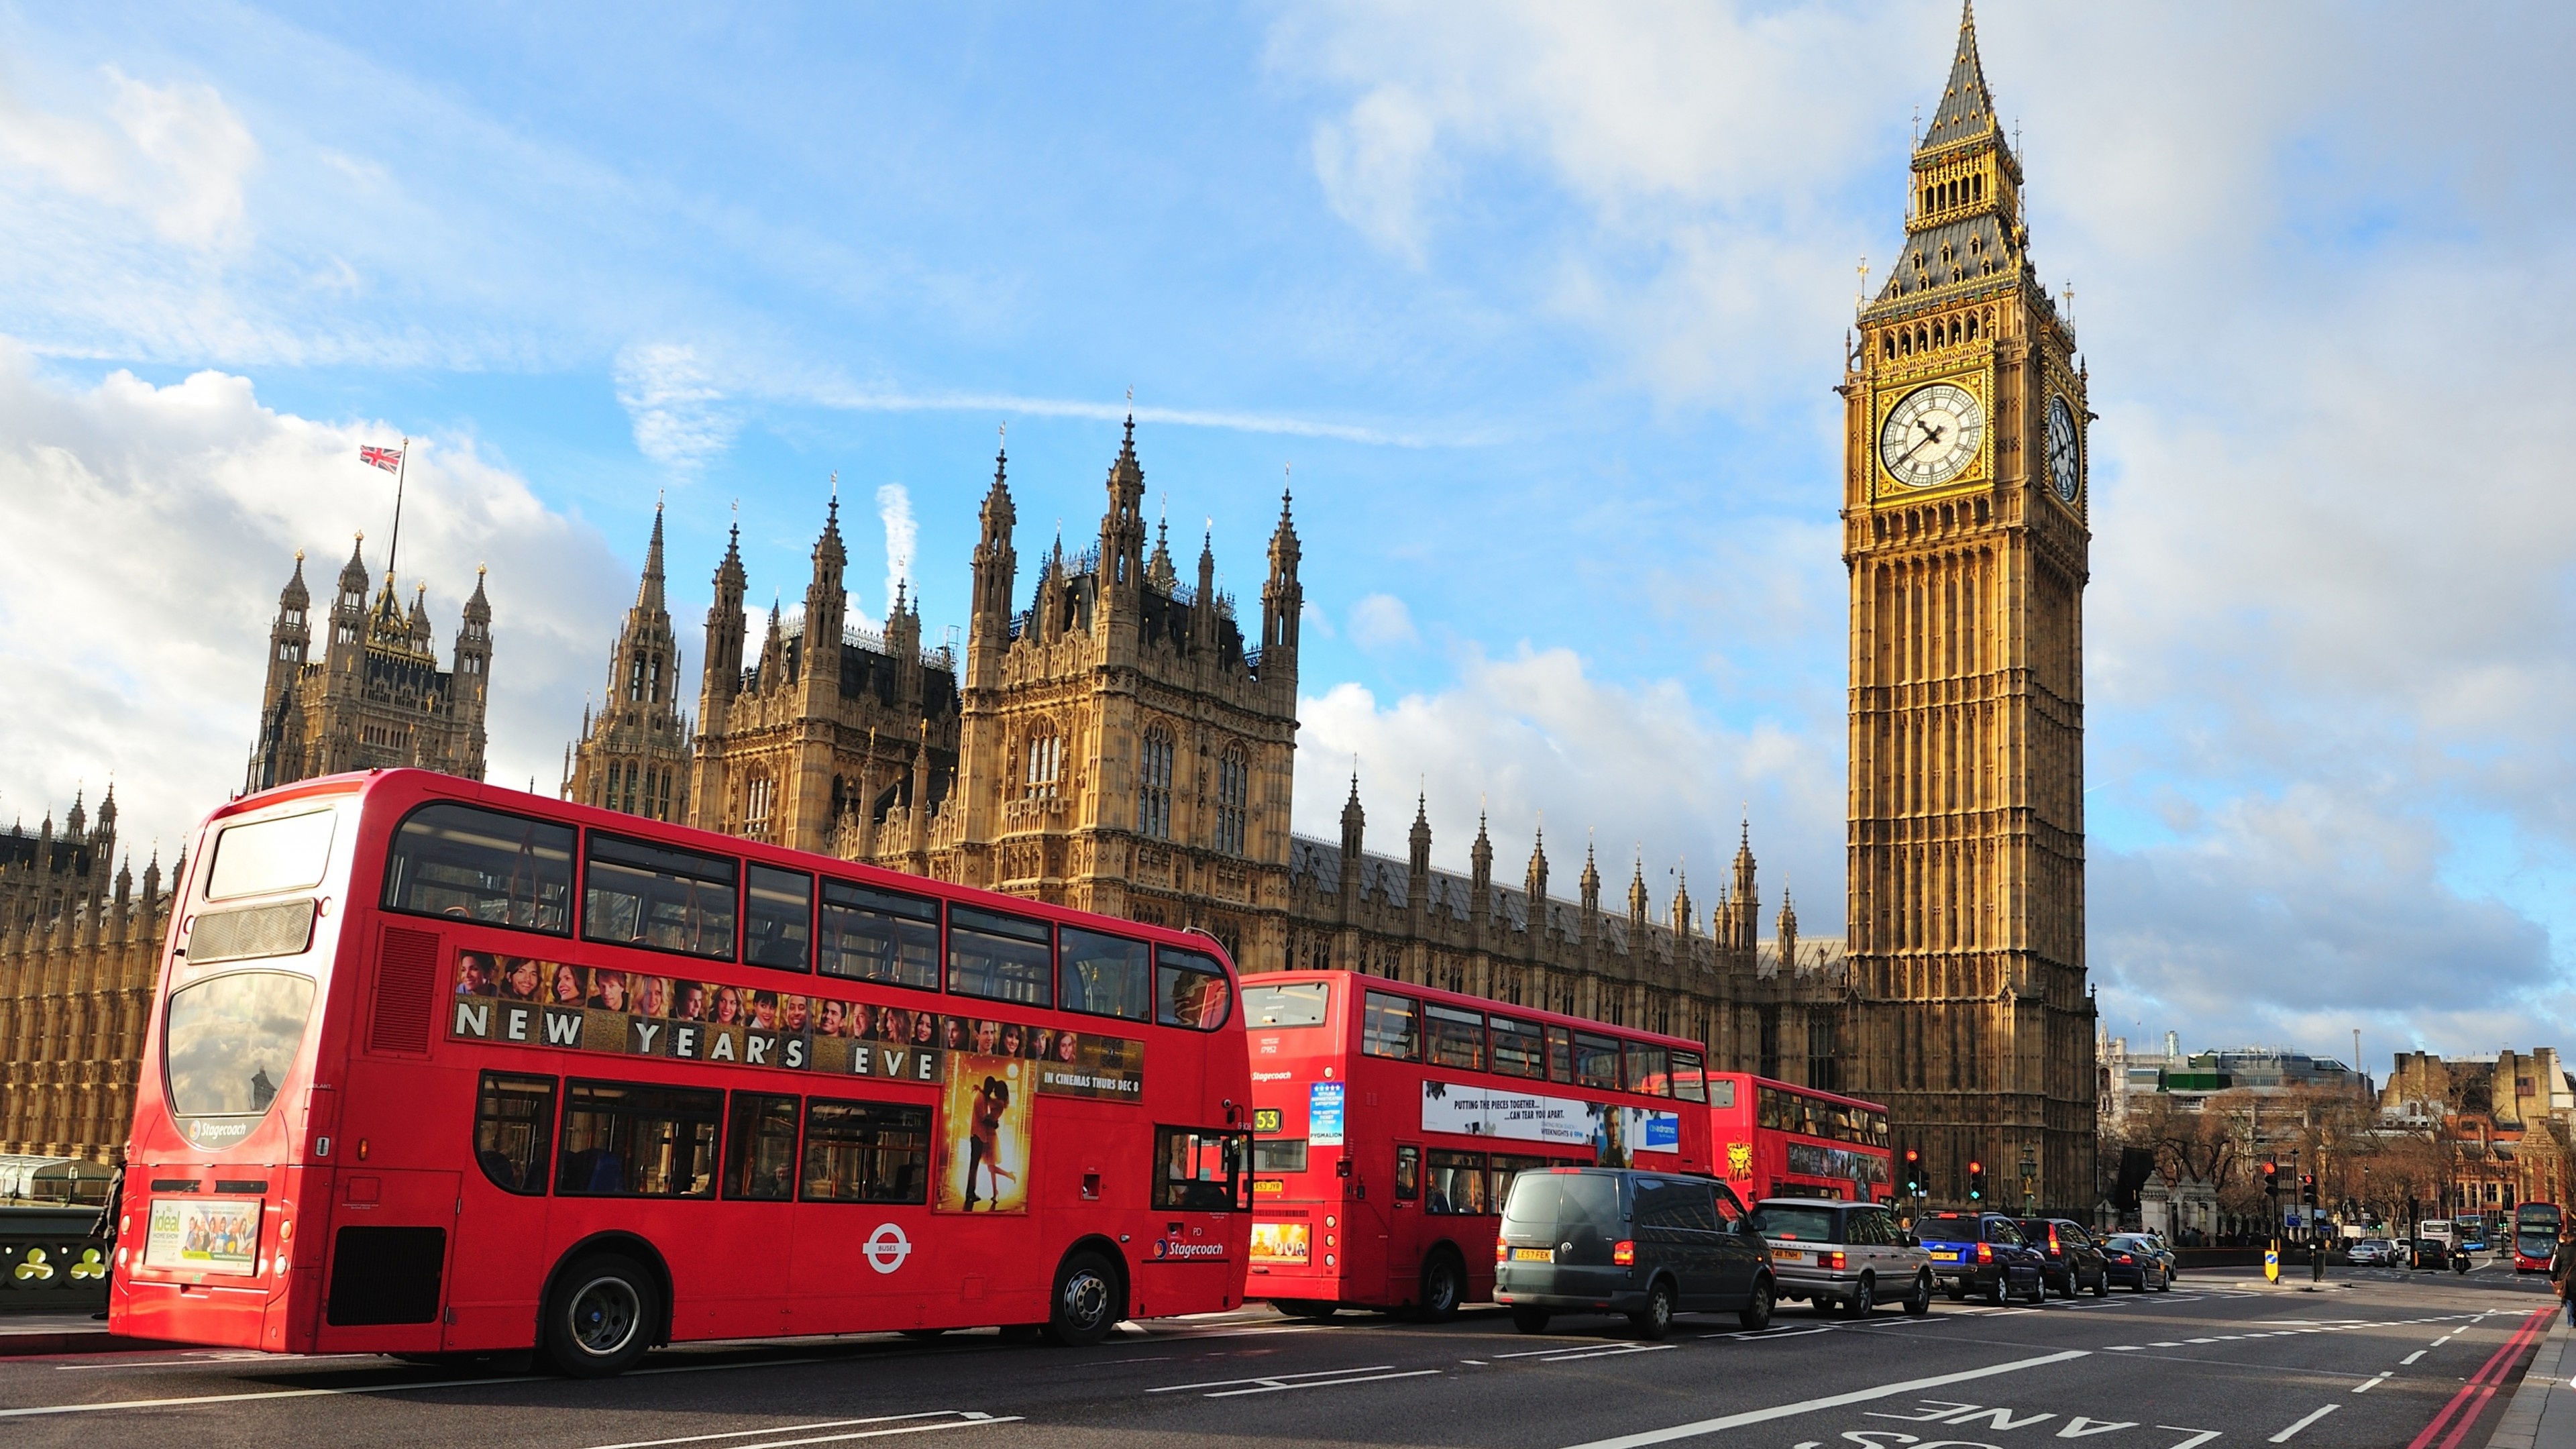 London architecture, Westminster Abbey, City bus travel, Tourism hotspot, 3840x2160 4K Desktop